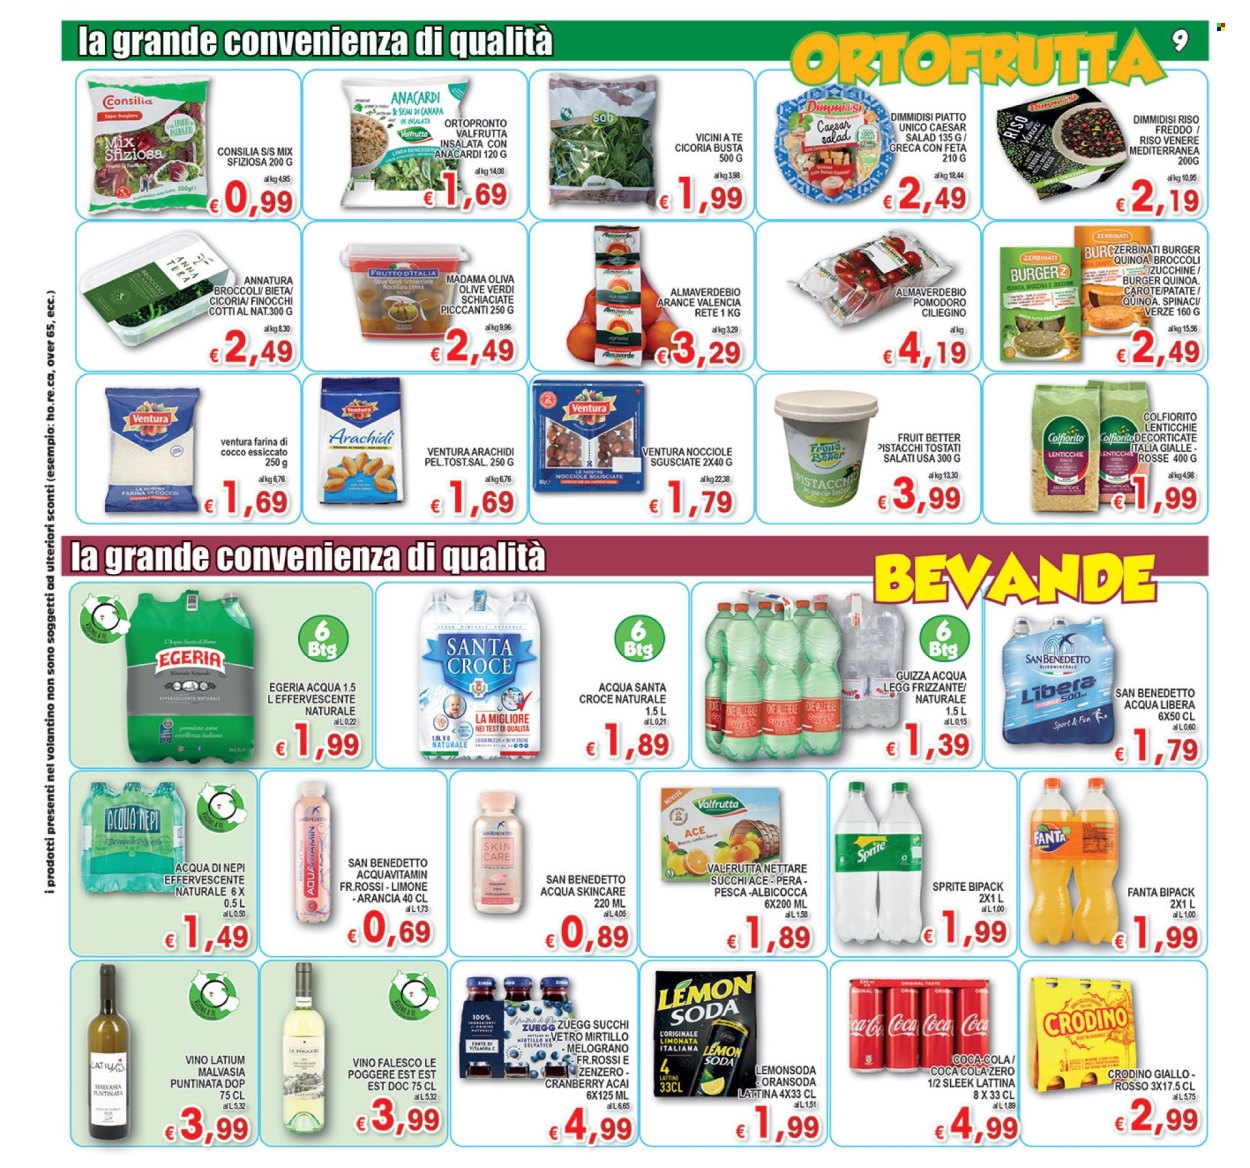 Volantino Top Supermercati - 27.4.2024 - 7.5.2024.